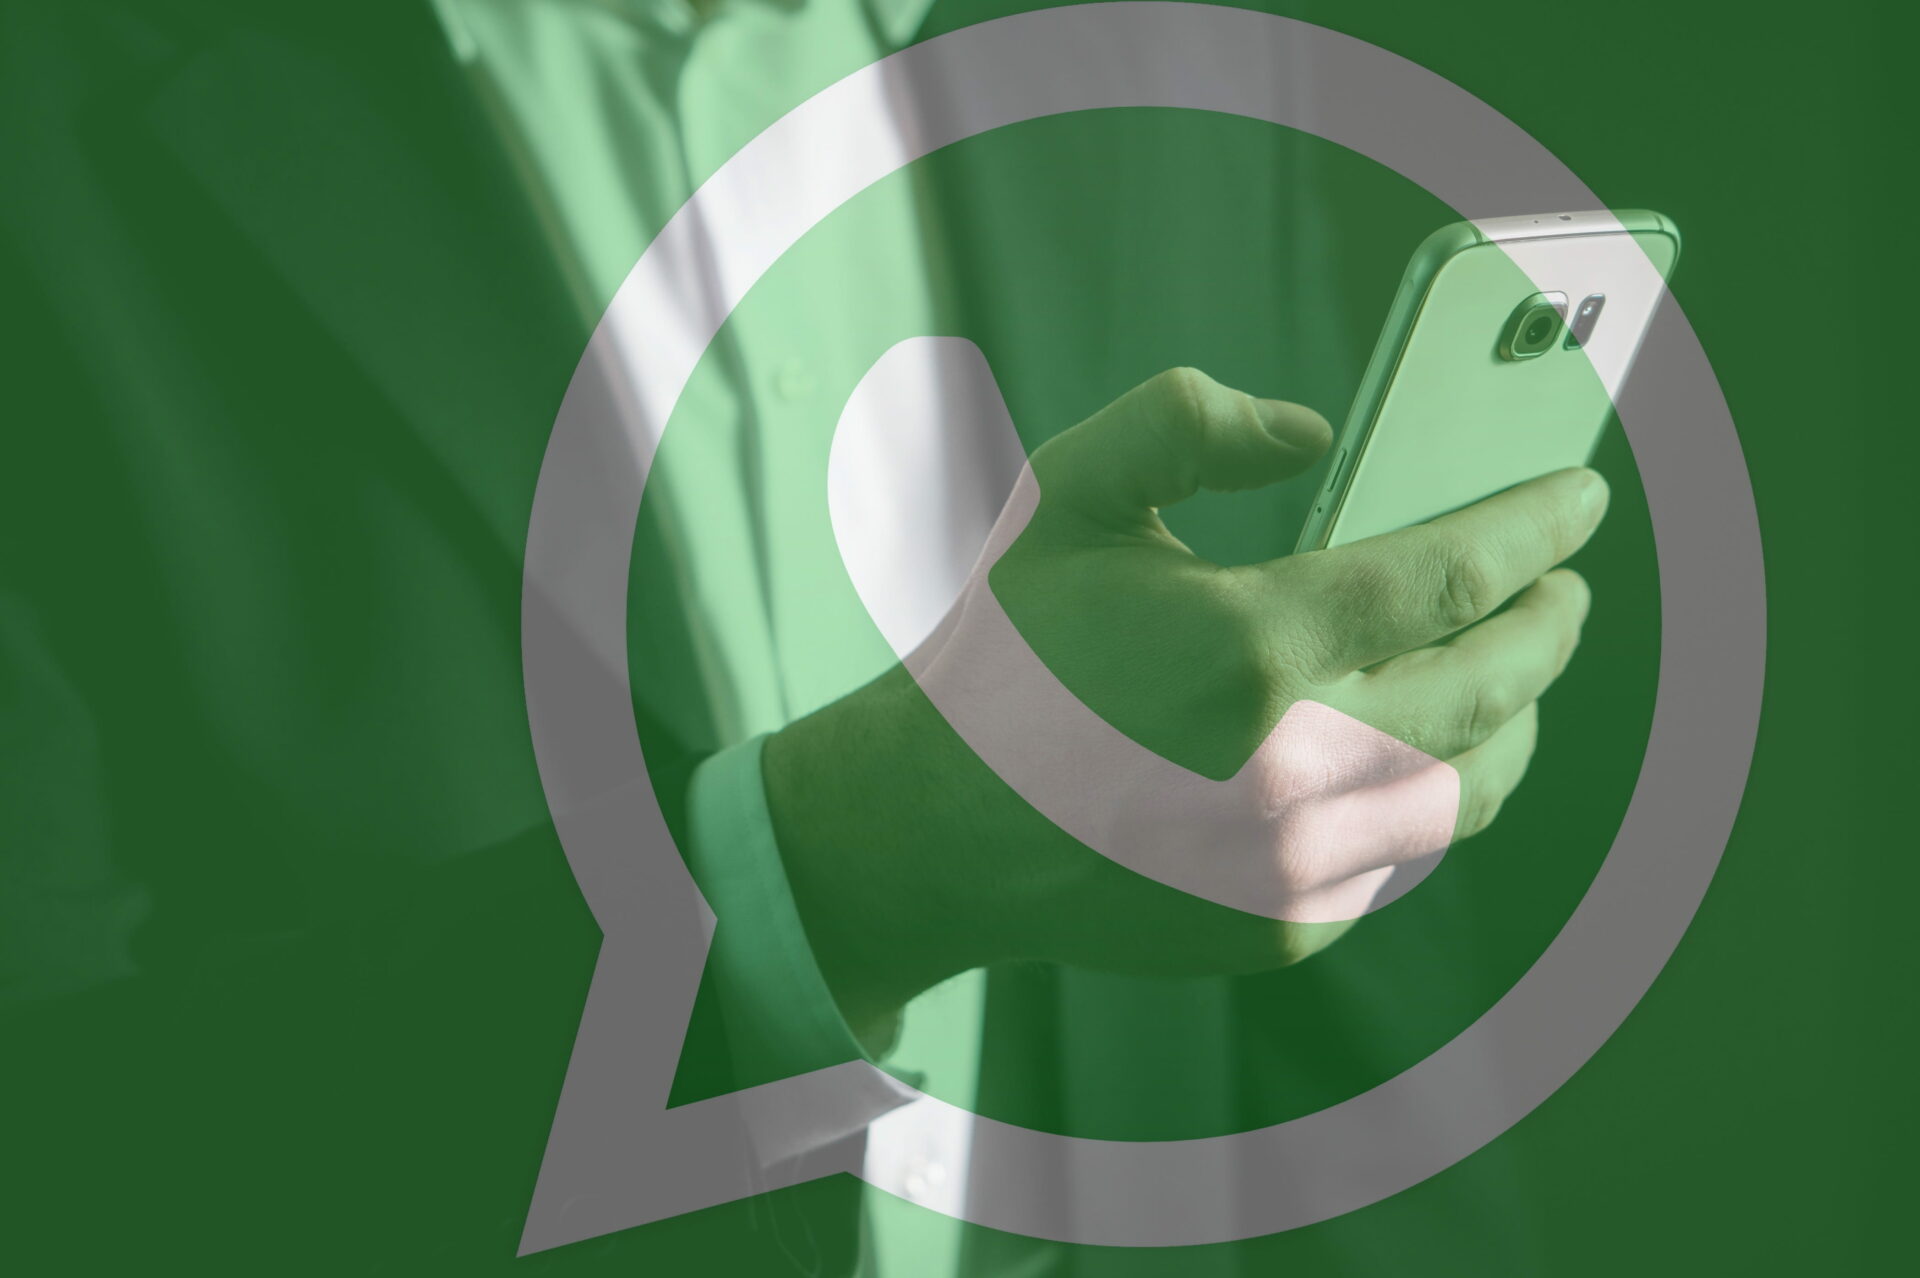 Pasos para activar la verificación de dos pasos en WhatsApp